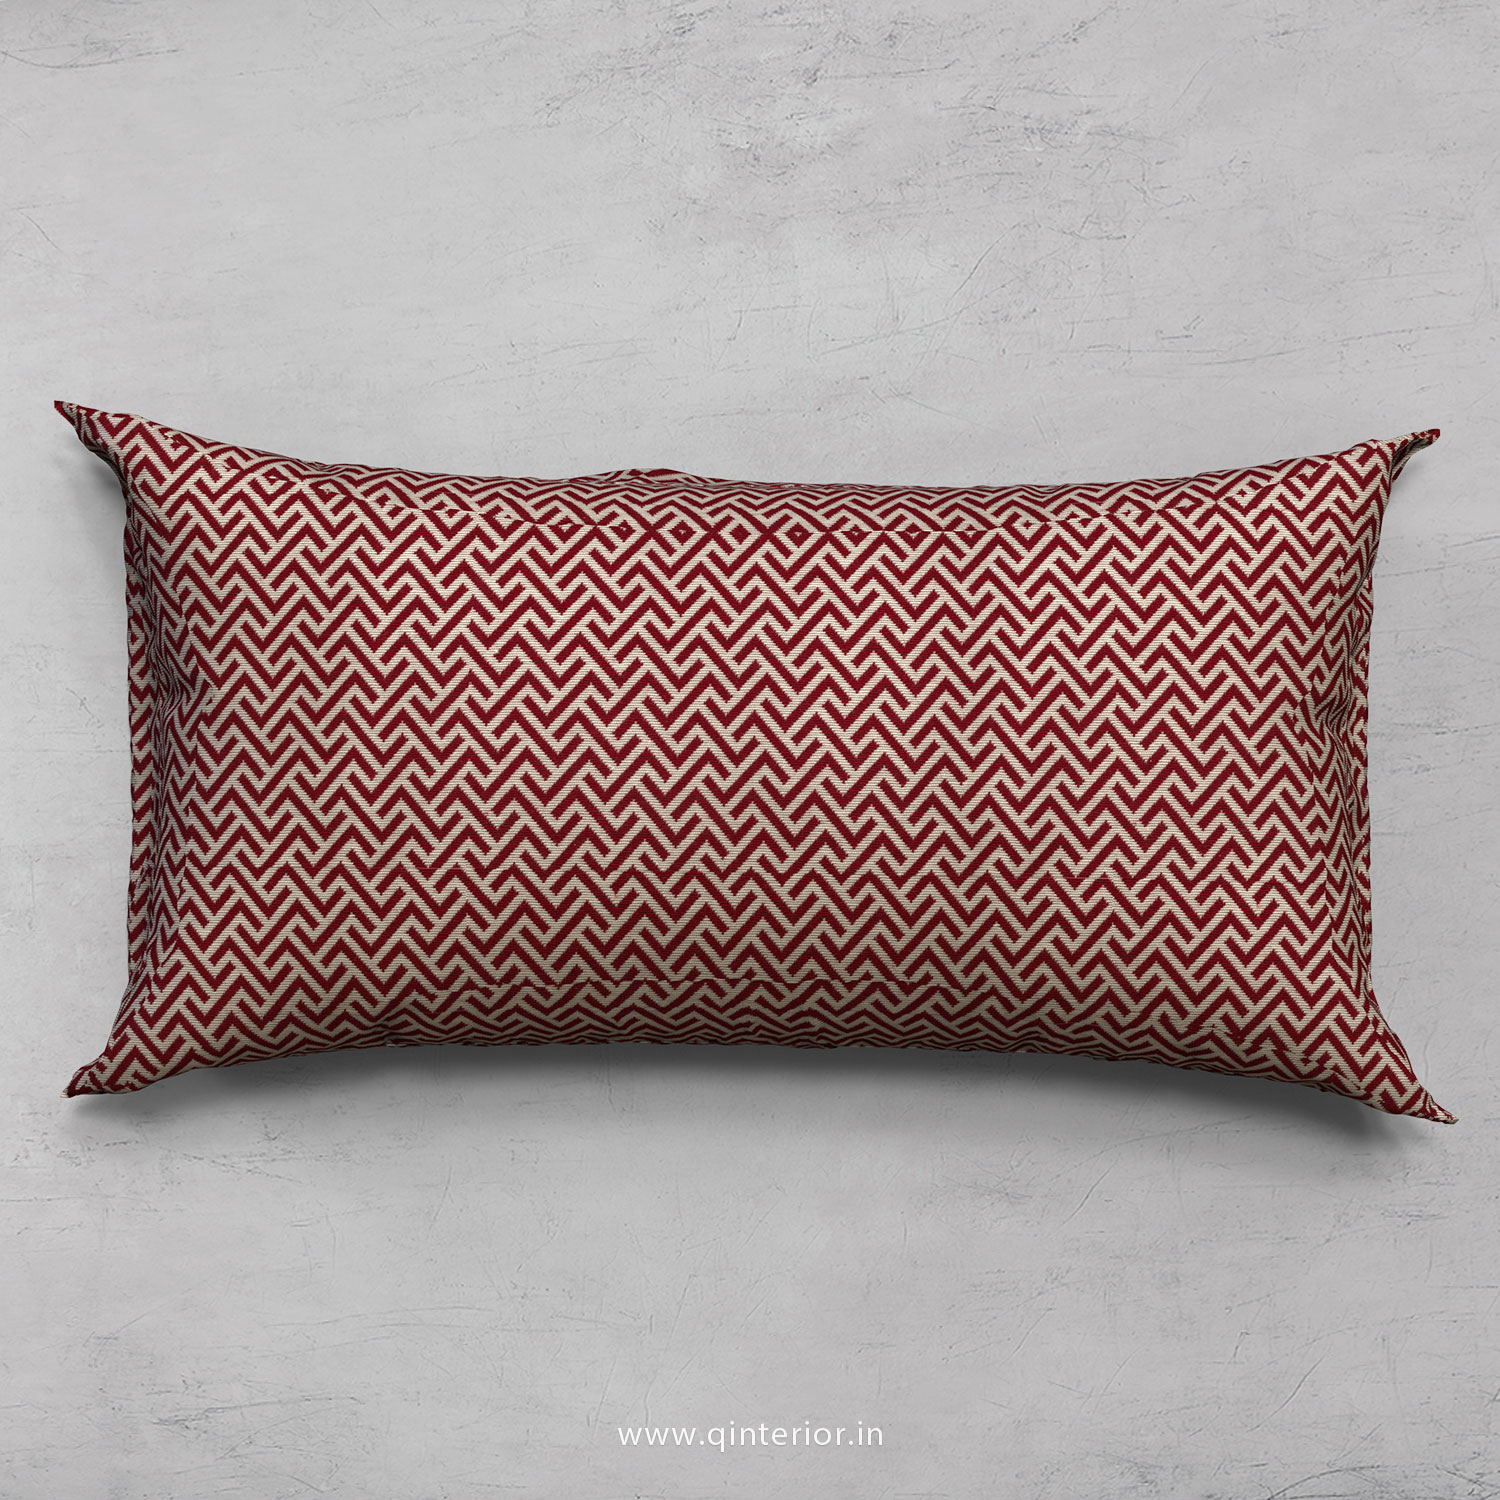 Cushion With Cushion Cover in Jacquard- CUS002 JQ14